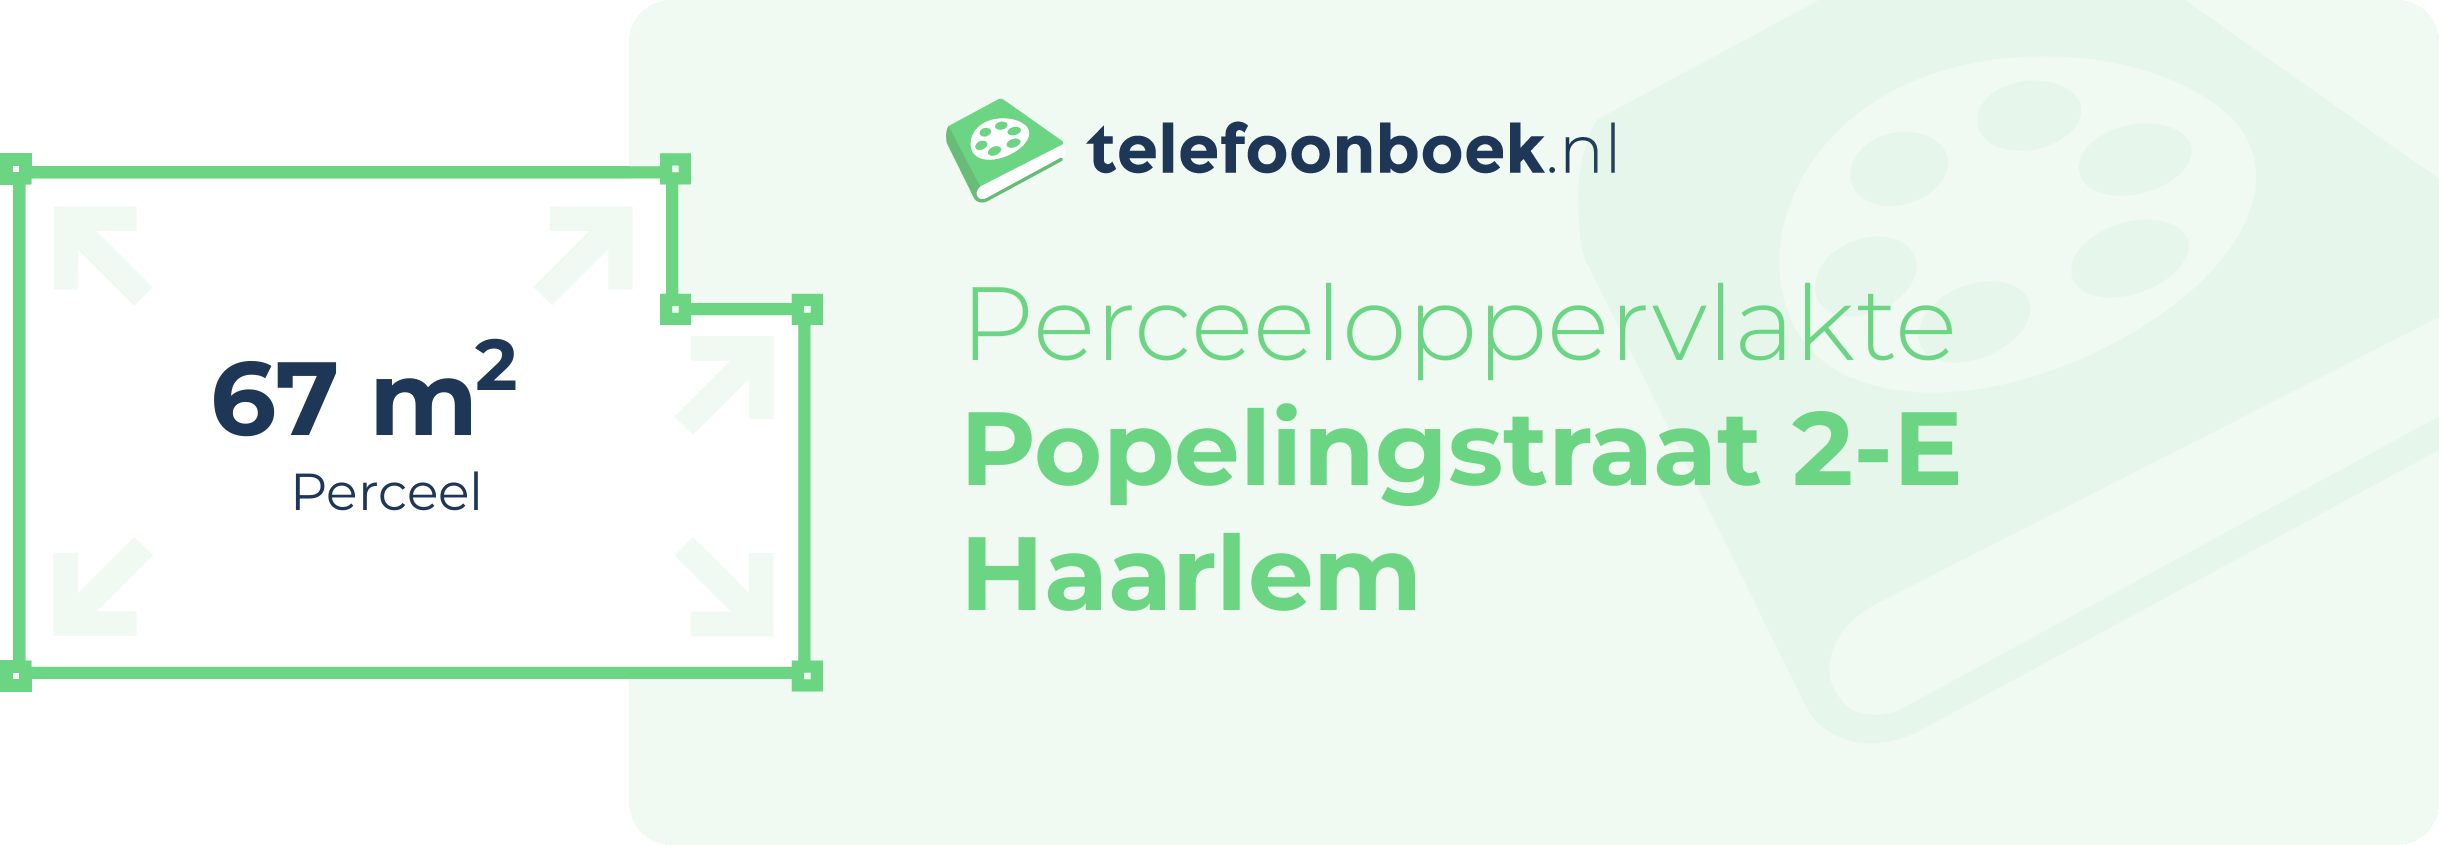 Perceeloppervlakte Popelingstraat 2-E Haarlem